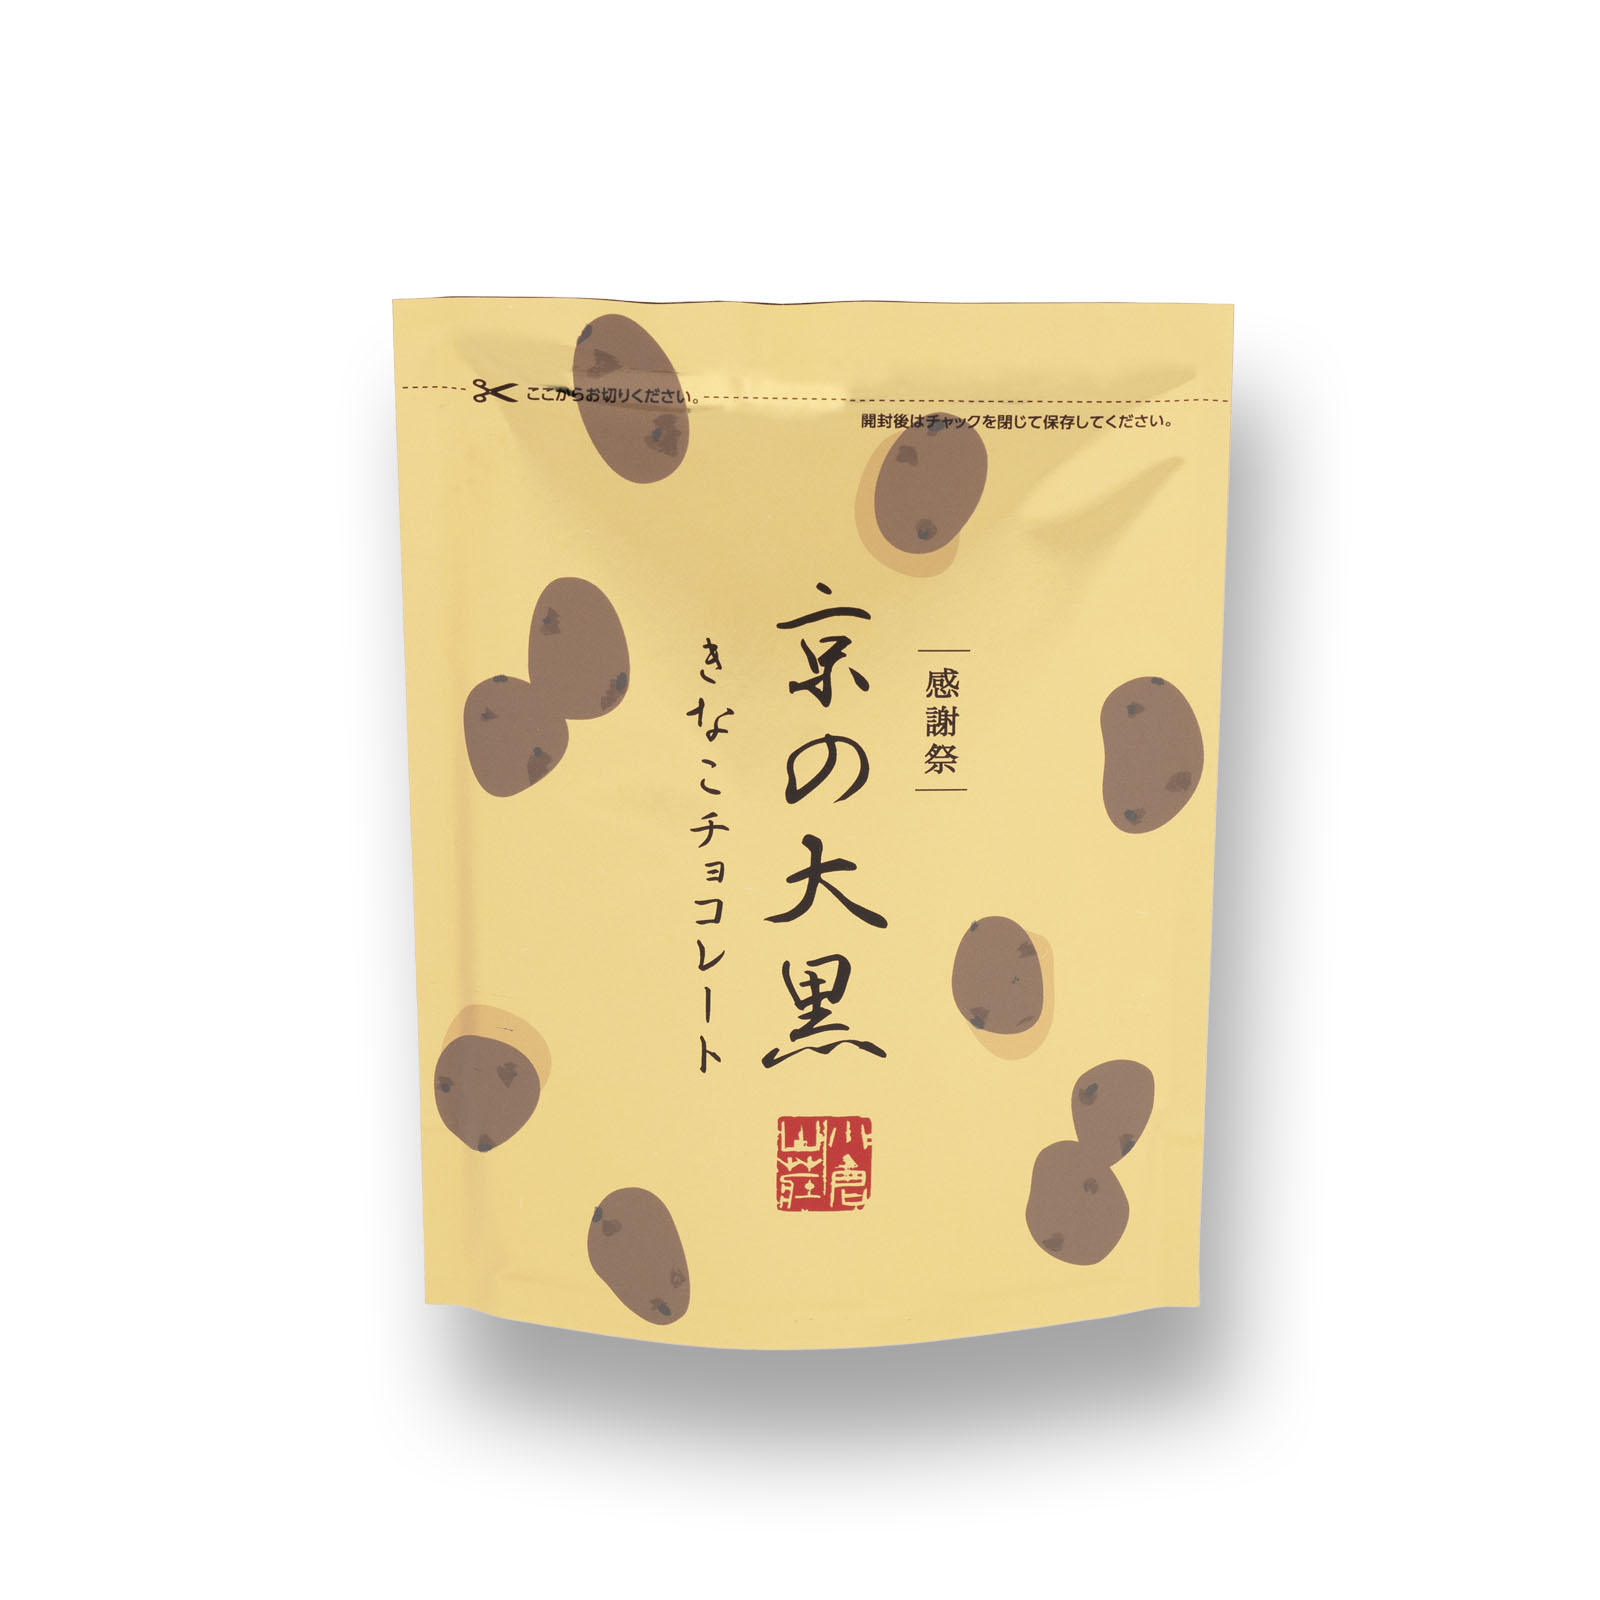 完売しました】【感謝祭限定】京の大黒 きなこチョコレート(80g): 米菓